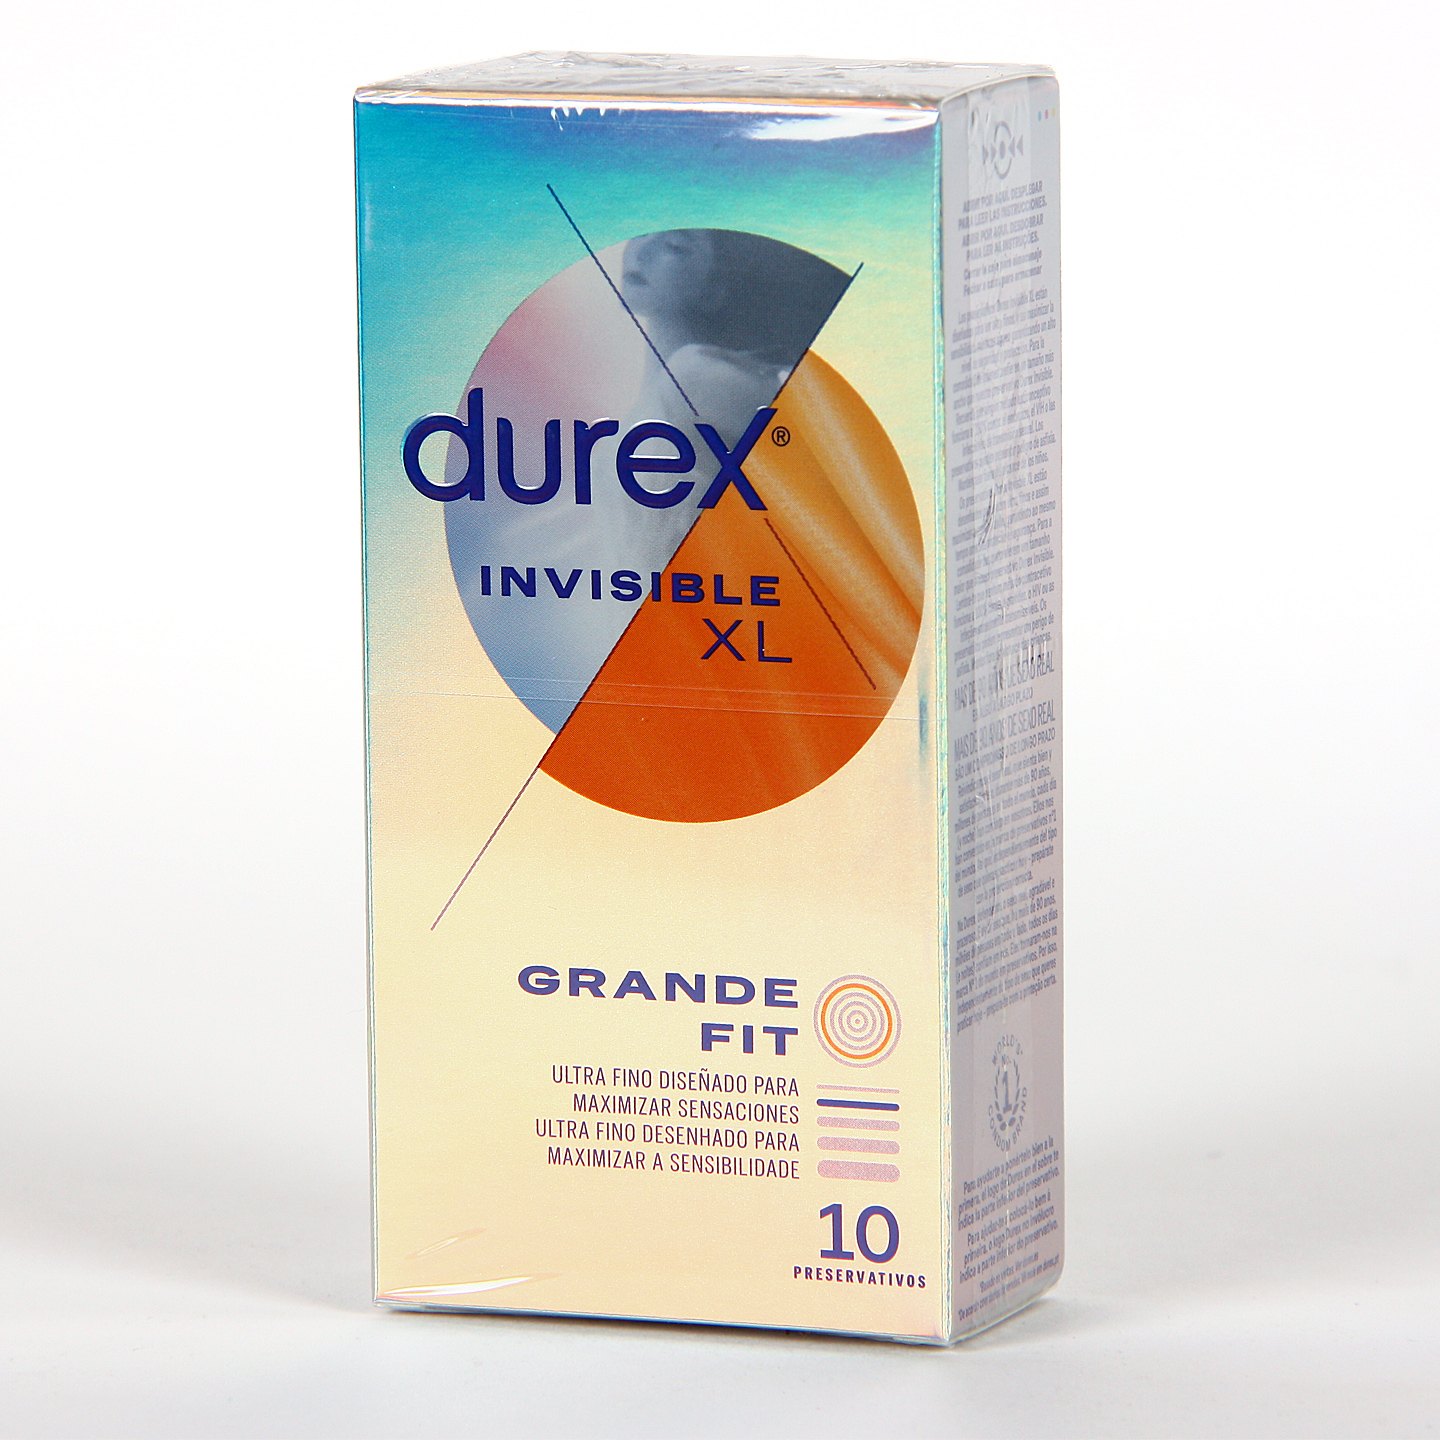 DUREX INVISIBLE XL PRESERVATIVOS 10 UNIDADES Ultra fino, mayor sensibilidad